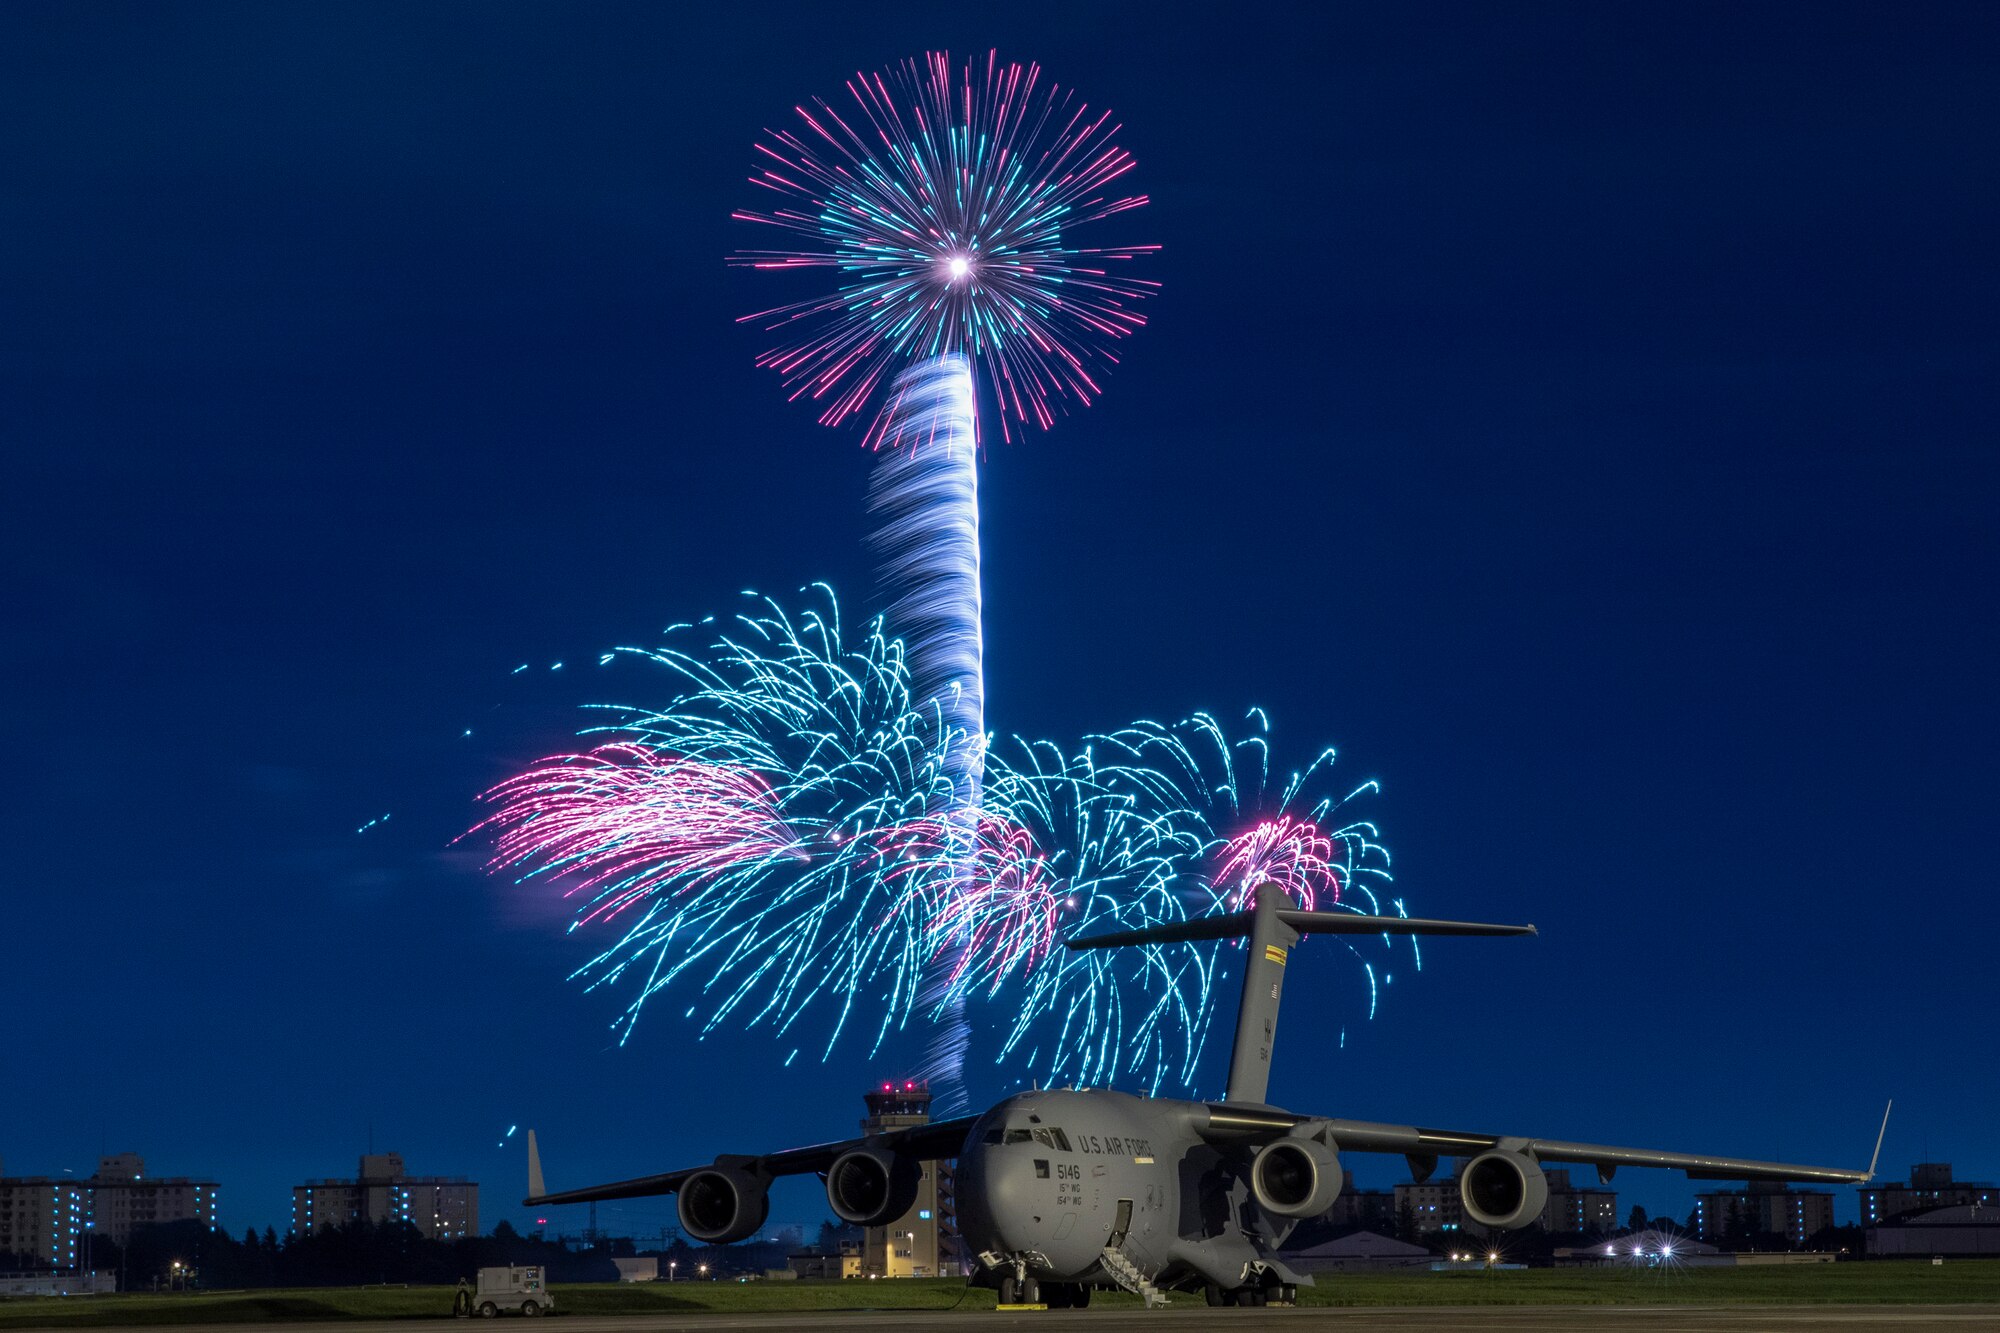 Fireworks explode behind a U.S. Air Force C-17 Globemaster III